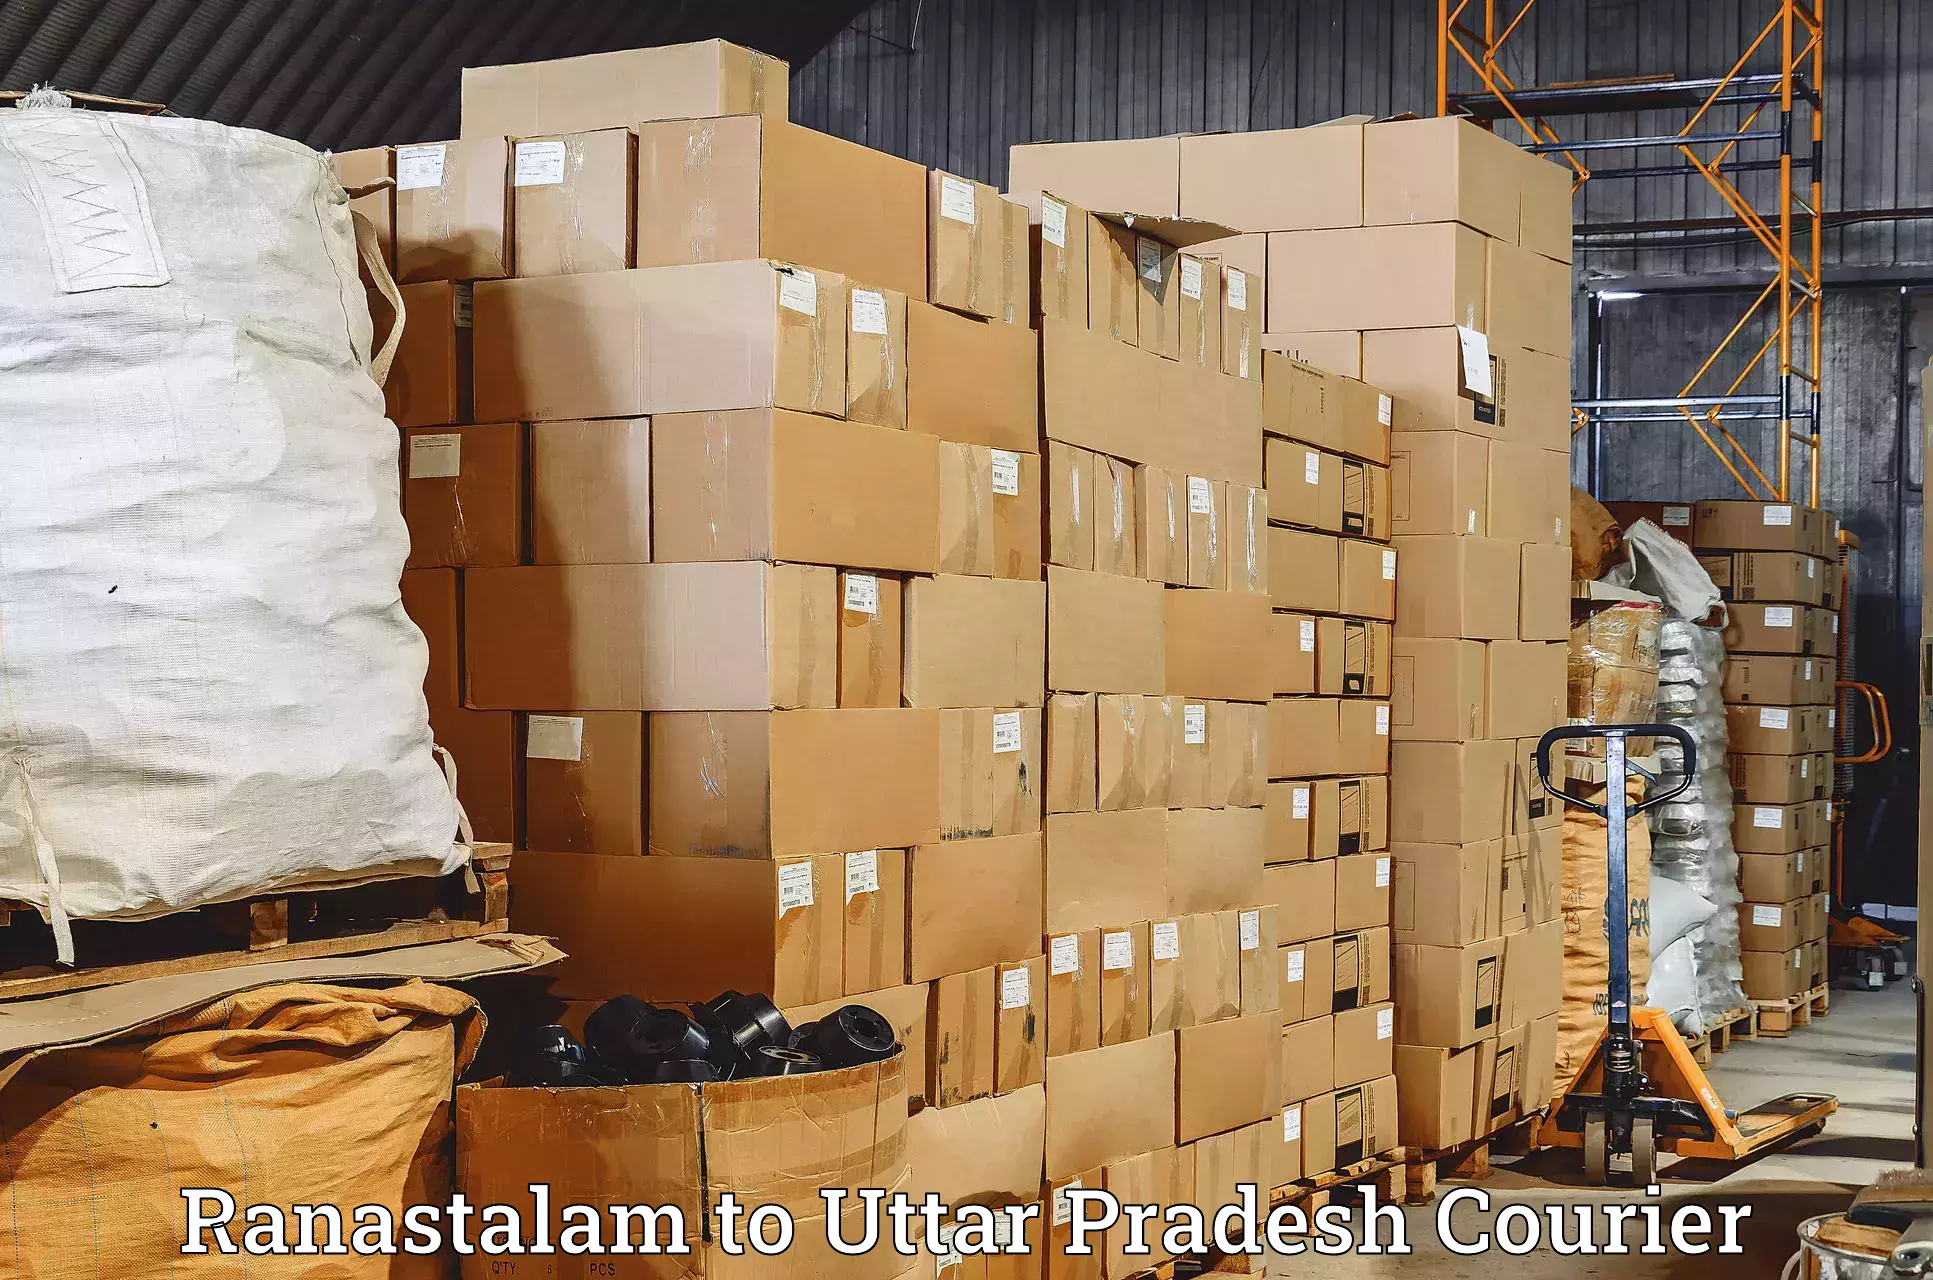 Urgent courier needs Ranastalam to Vrindavan